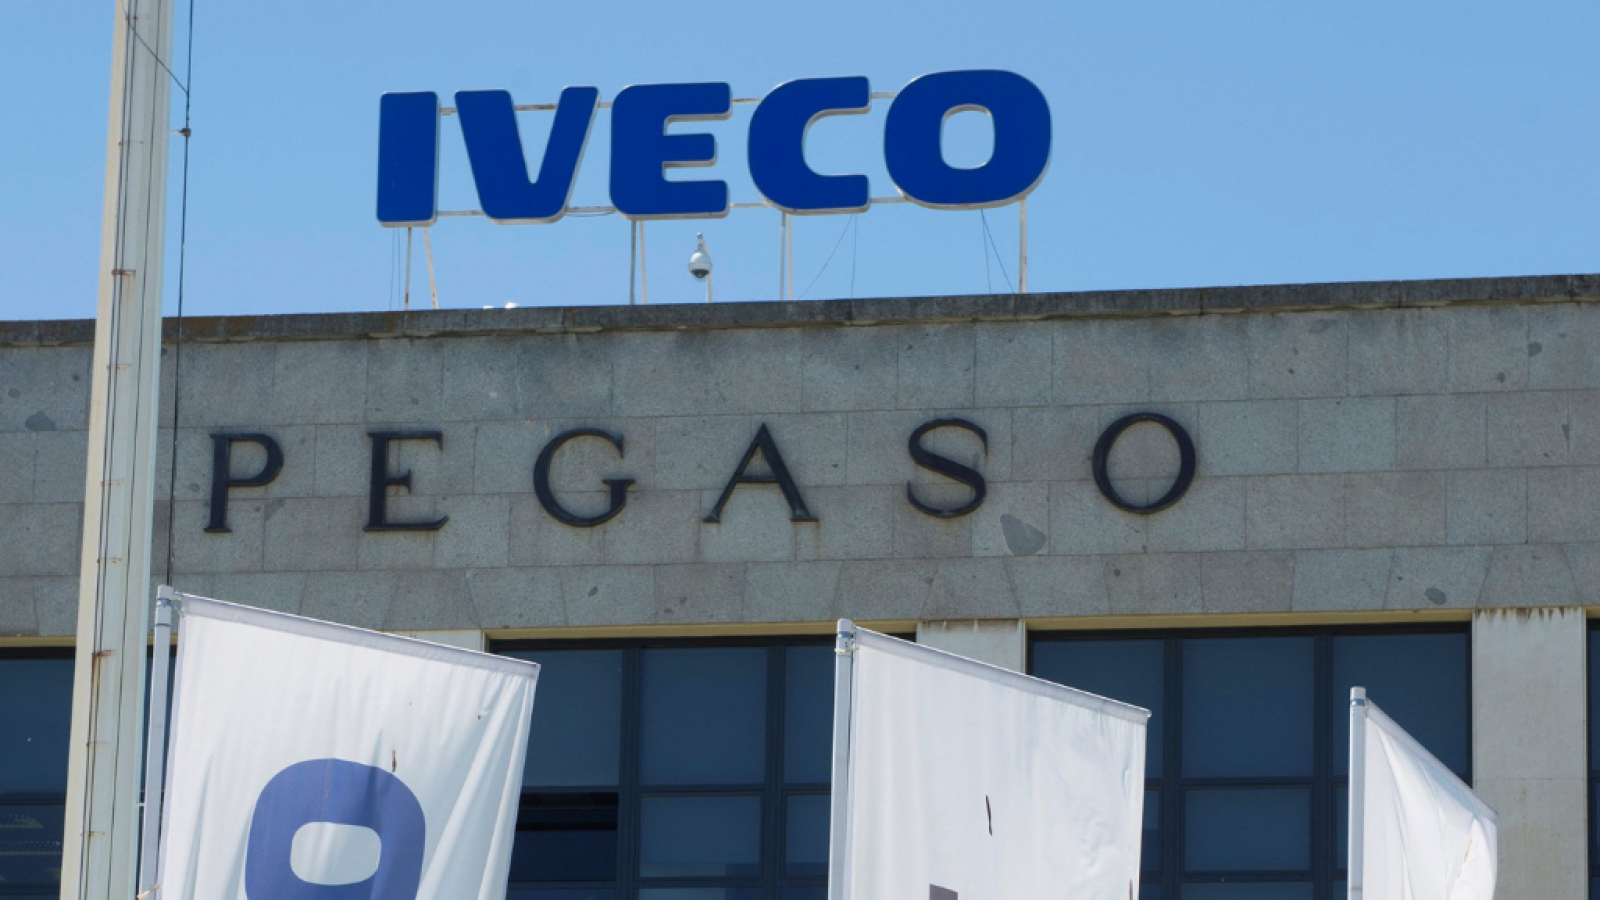 Abierta una investigación tras el suicidio de la trabajadora de Iveco - escucha ahora